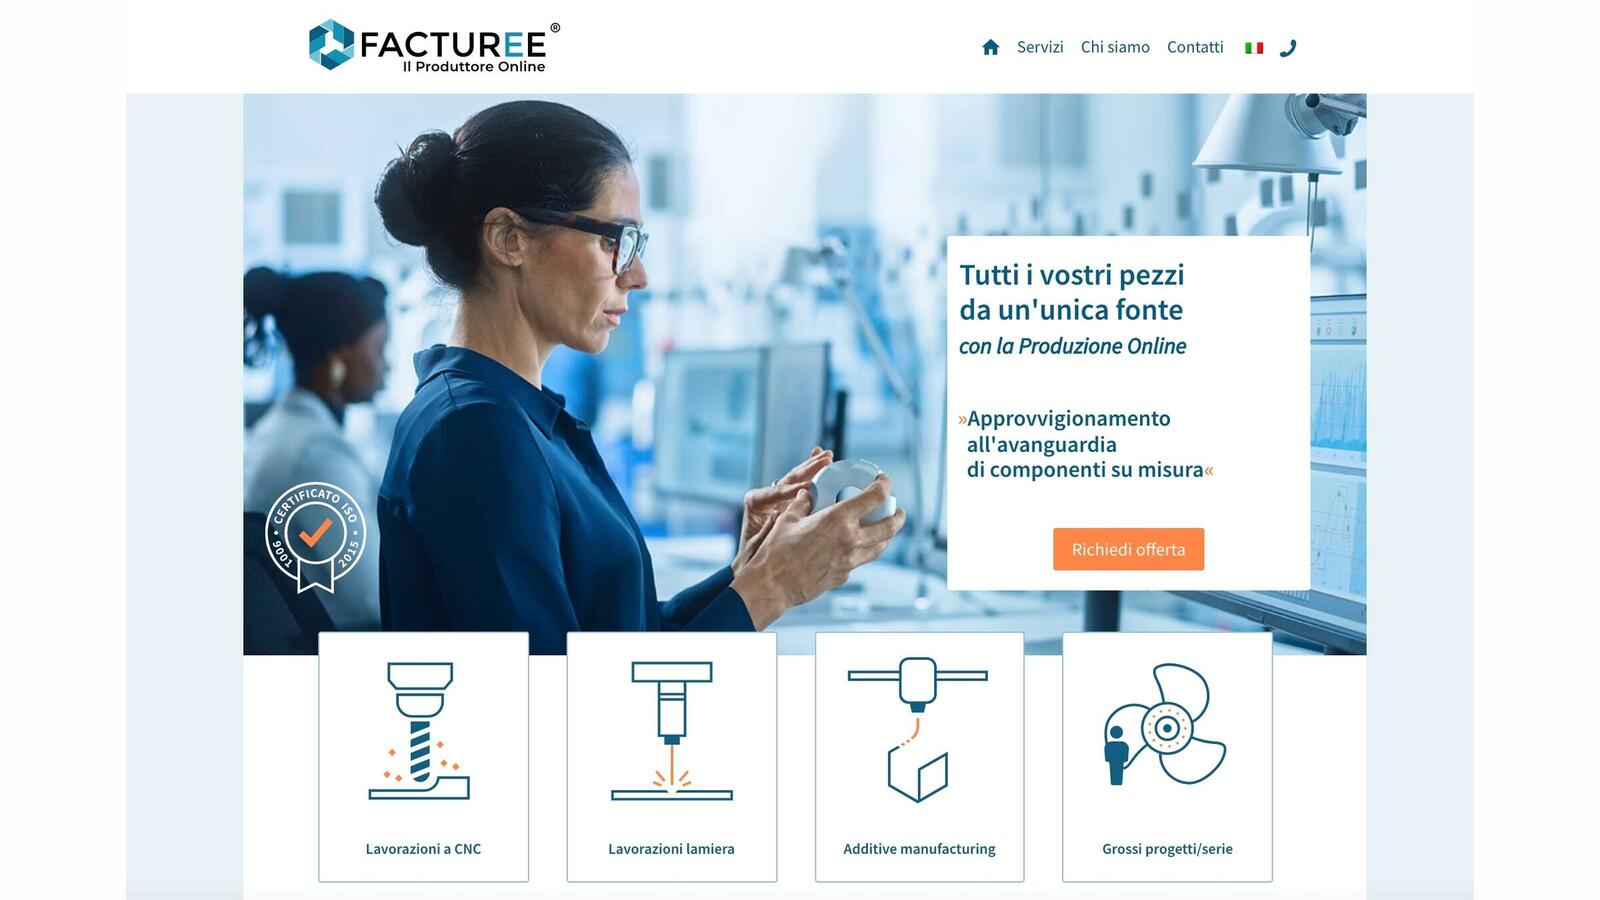 Die B2B-Fertigungsplatt­form von Facturee ist prädestiniert für die internationale Nutzung. Jetzt können auch Kunden aus Italien das Online-Angebot nutzen.